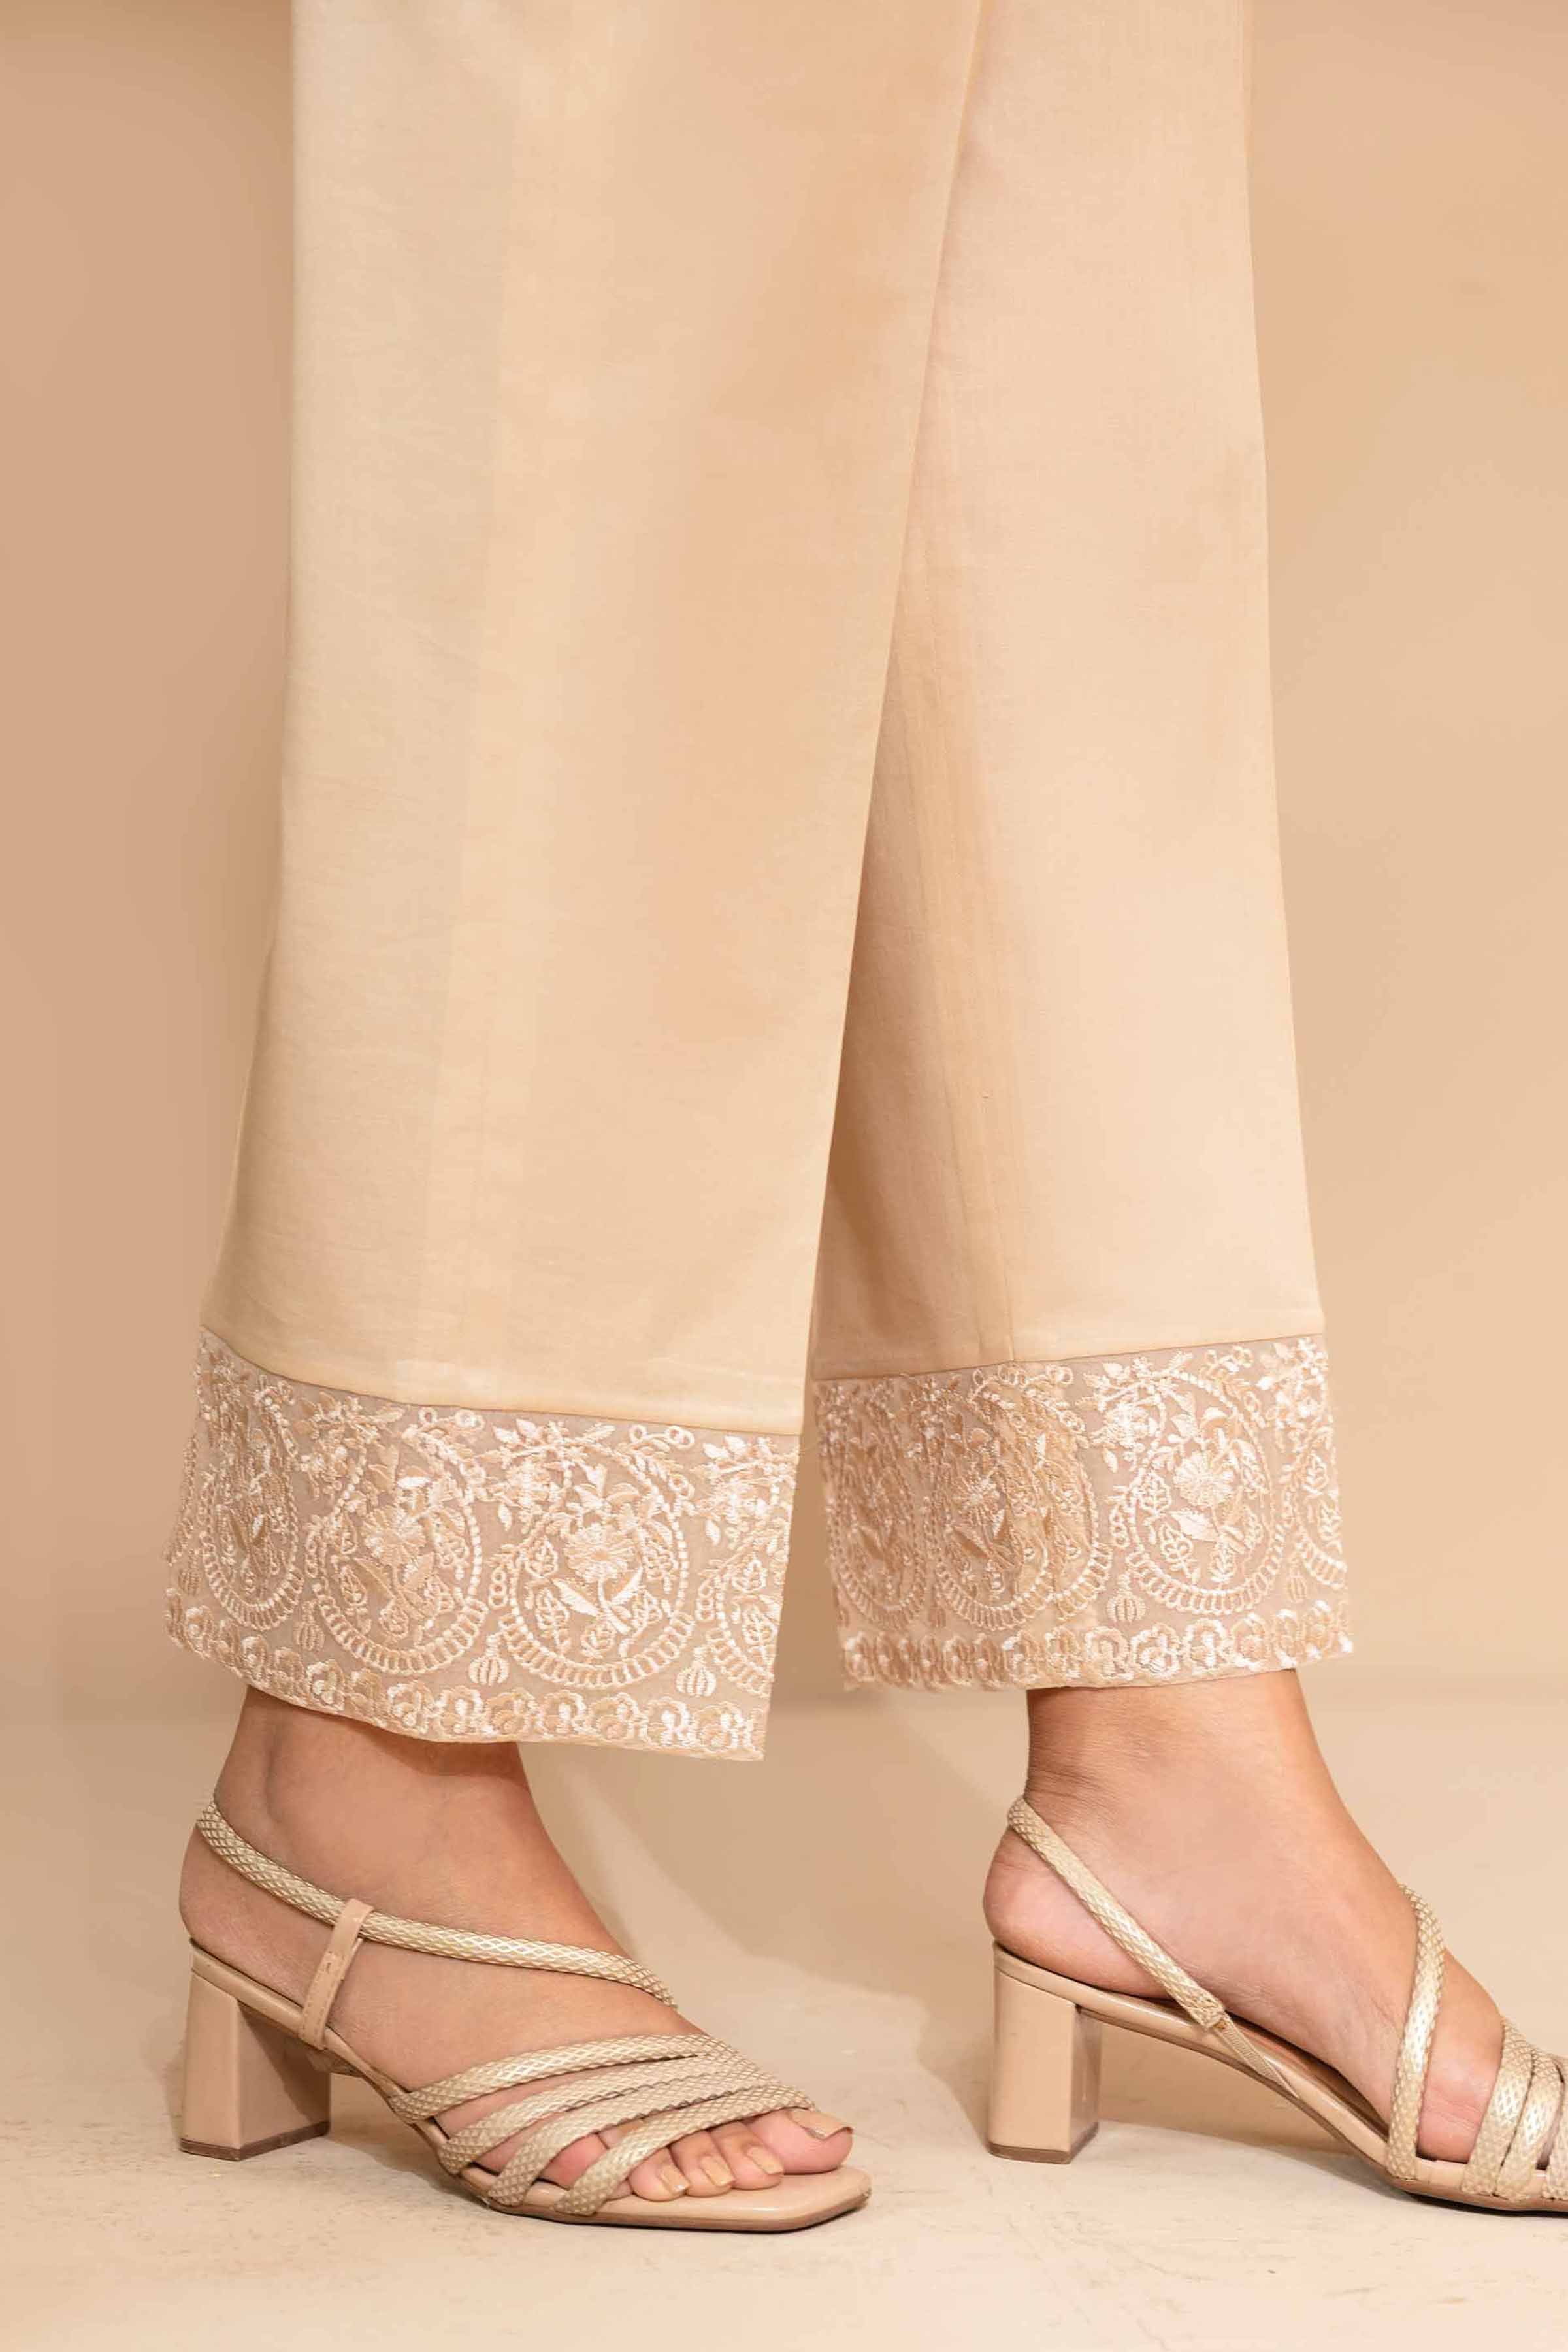 Ladies Bottom Wear | Trouser Pant Online Shopping in Pakistan | SAYA – Saya